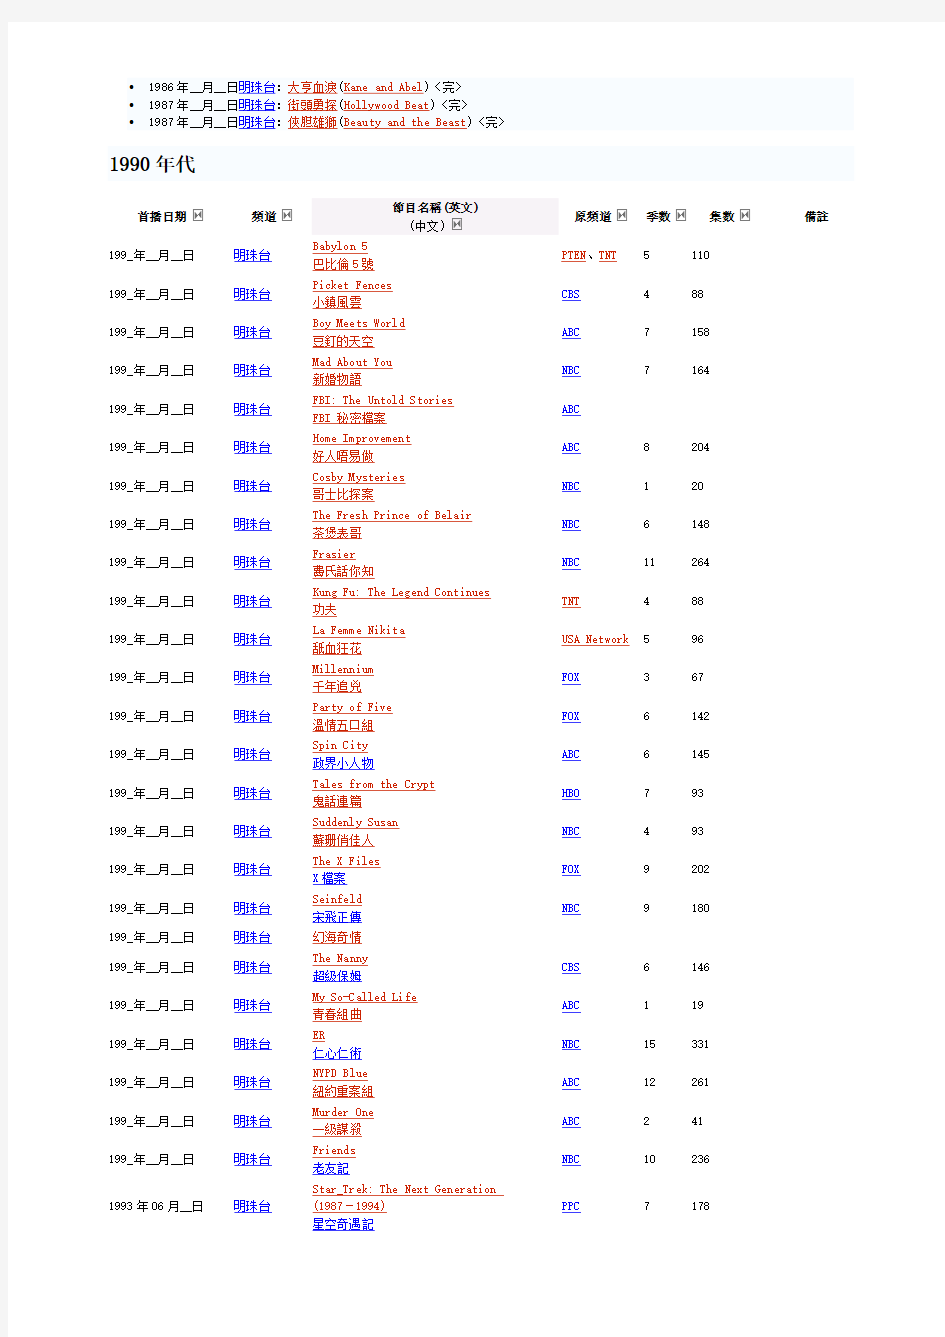 无线电视TVB外购美国电视剧、电影列表